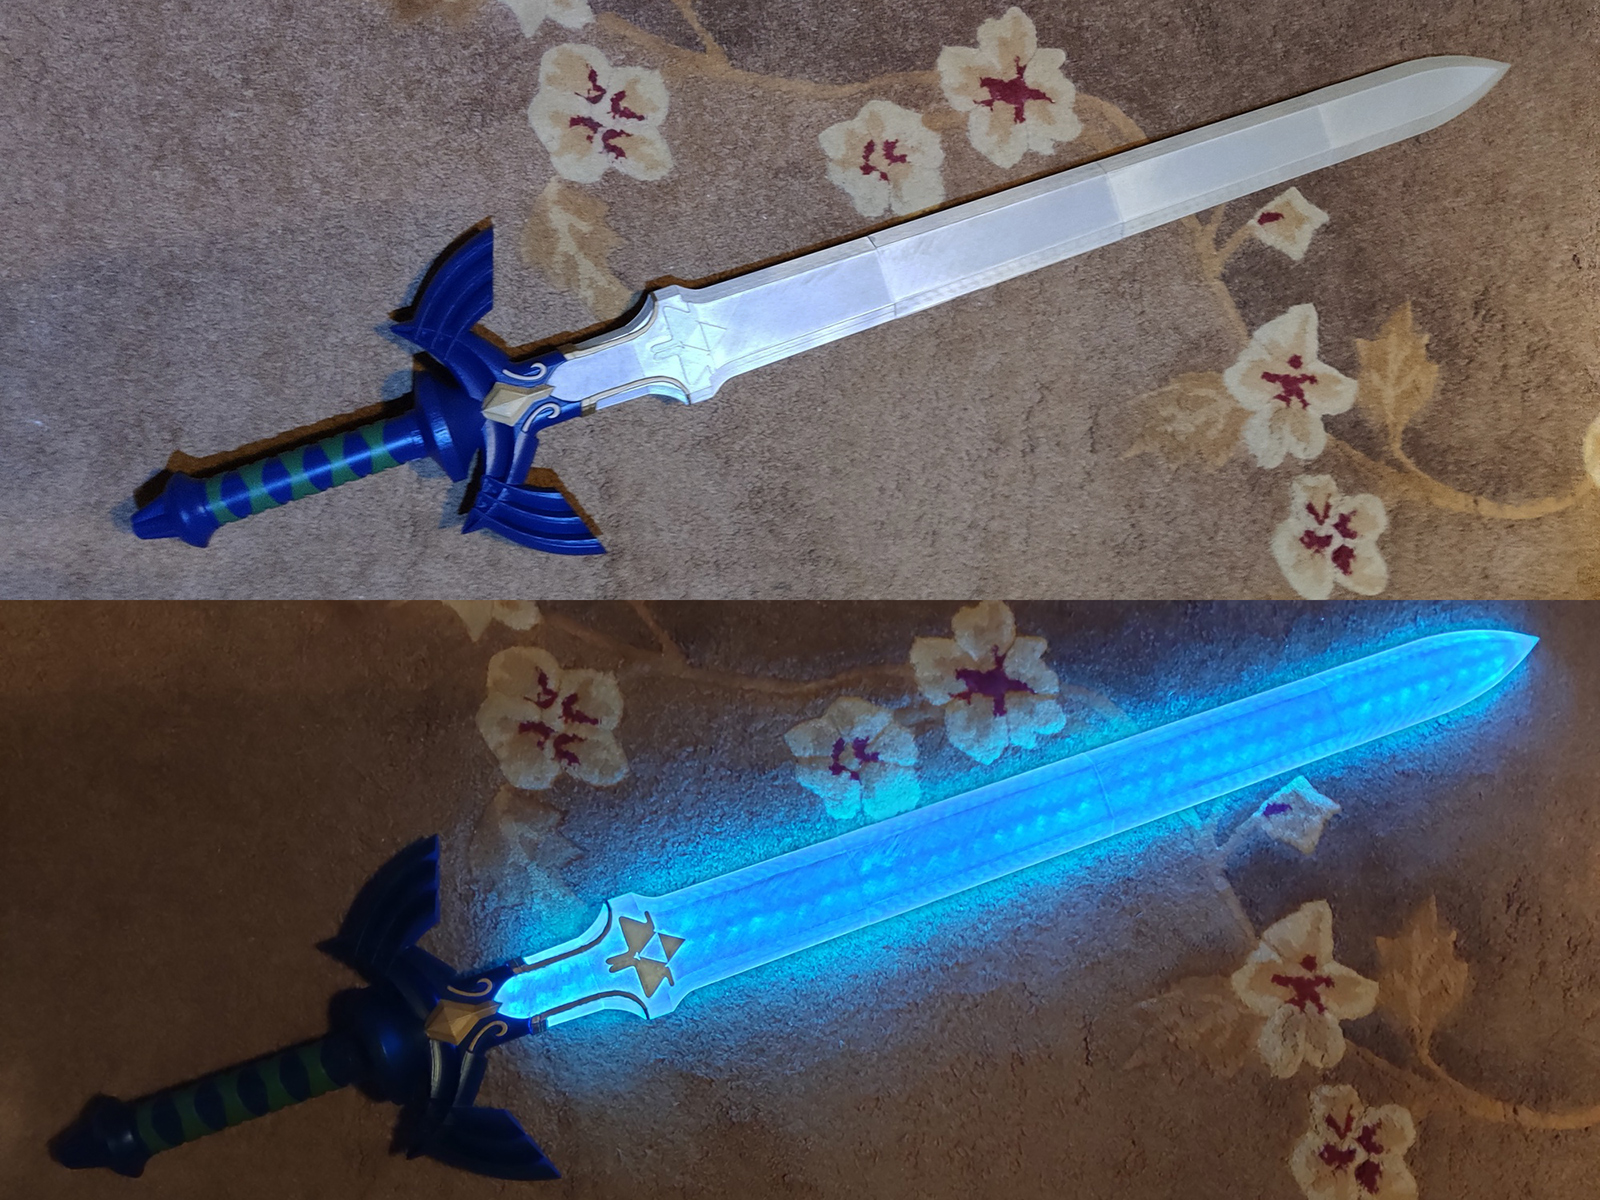 LED Master Sword (The Legend of Zelda)